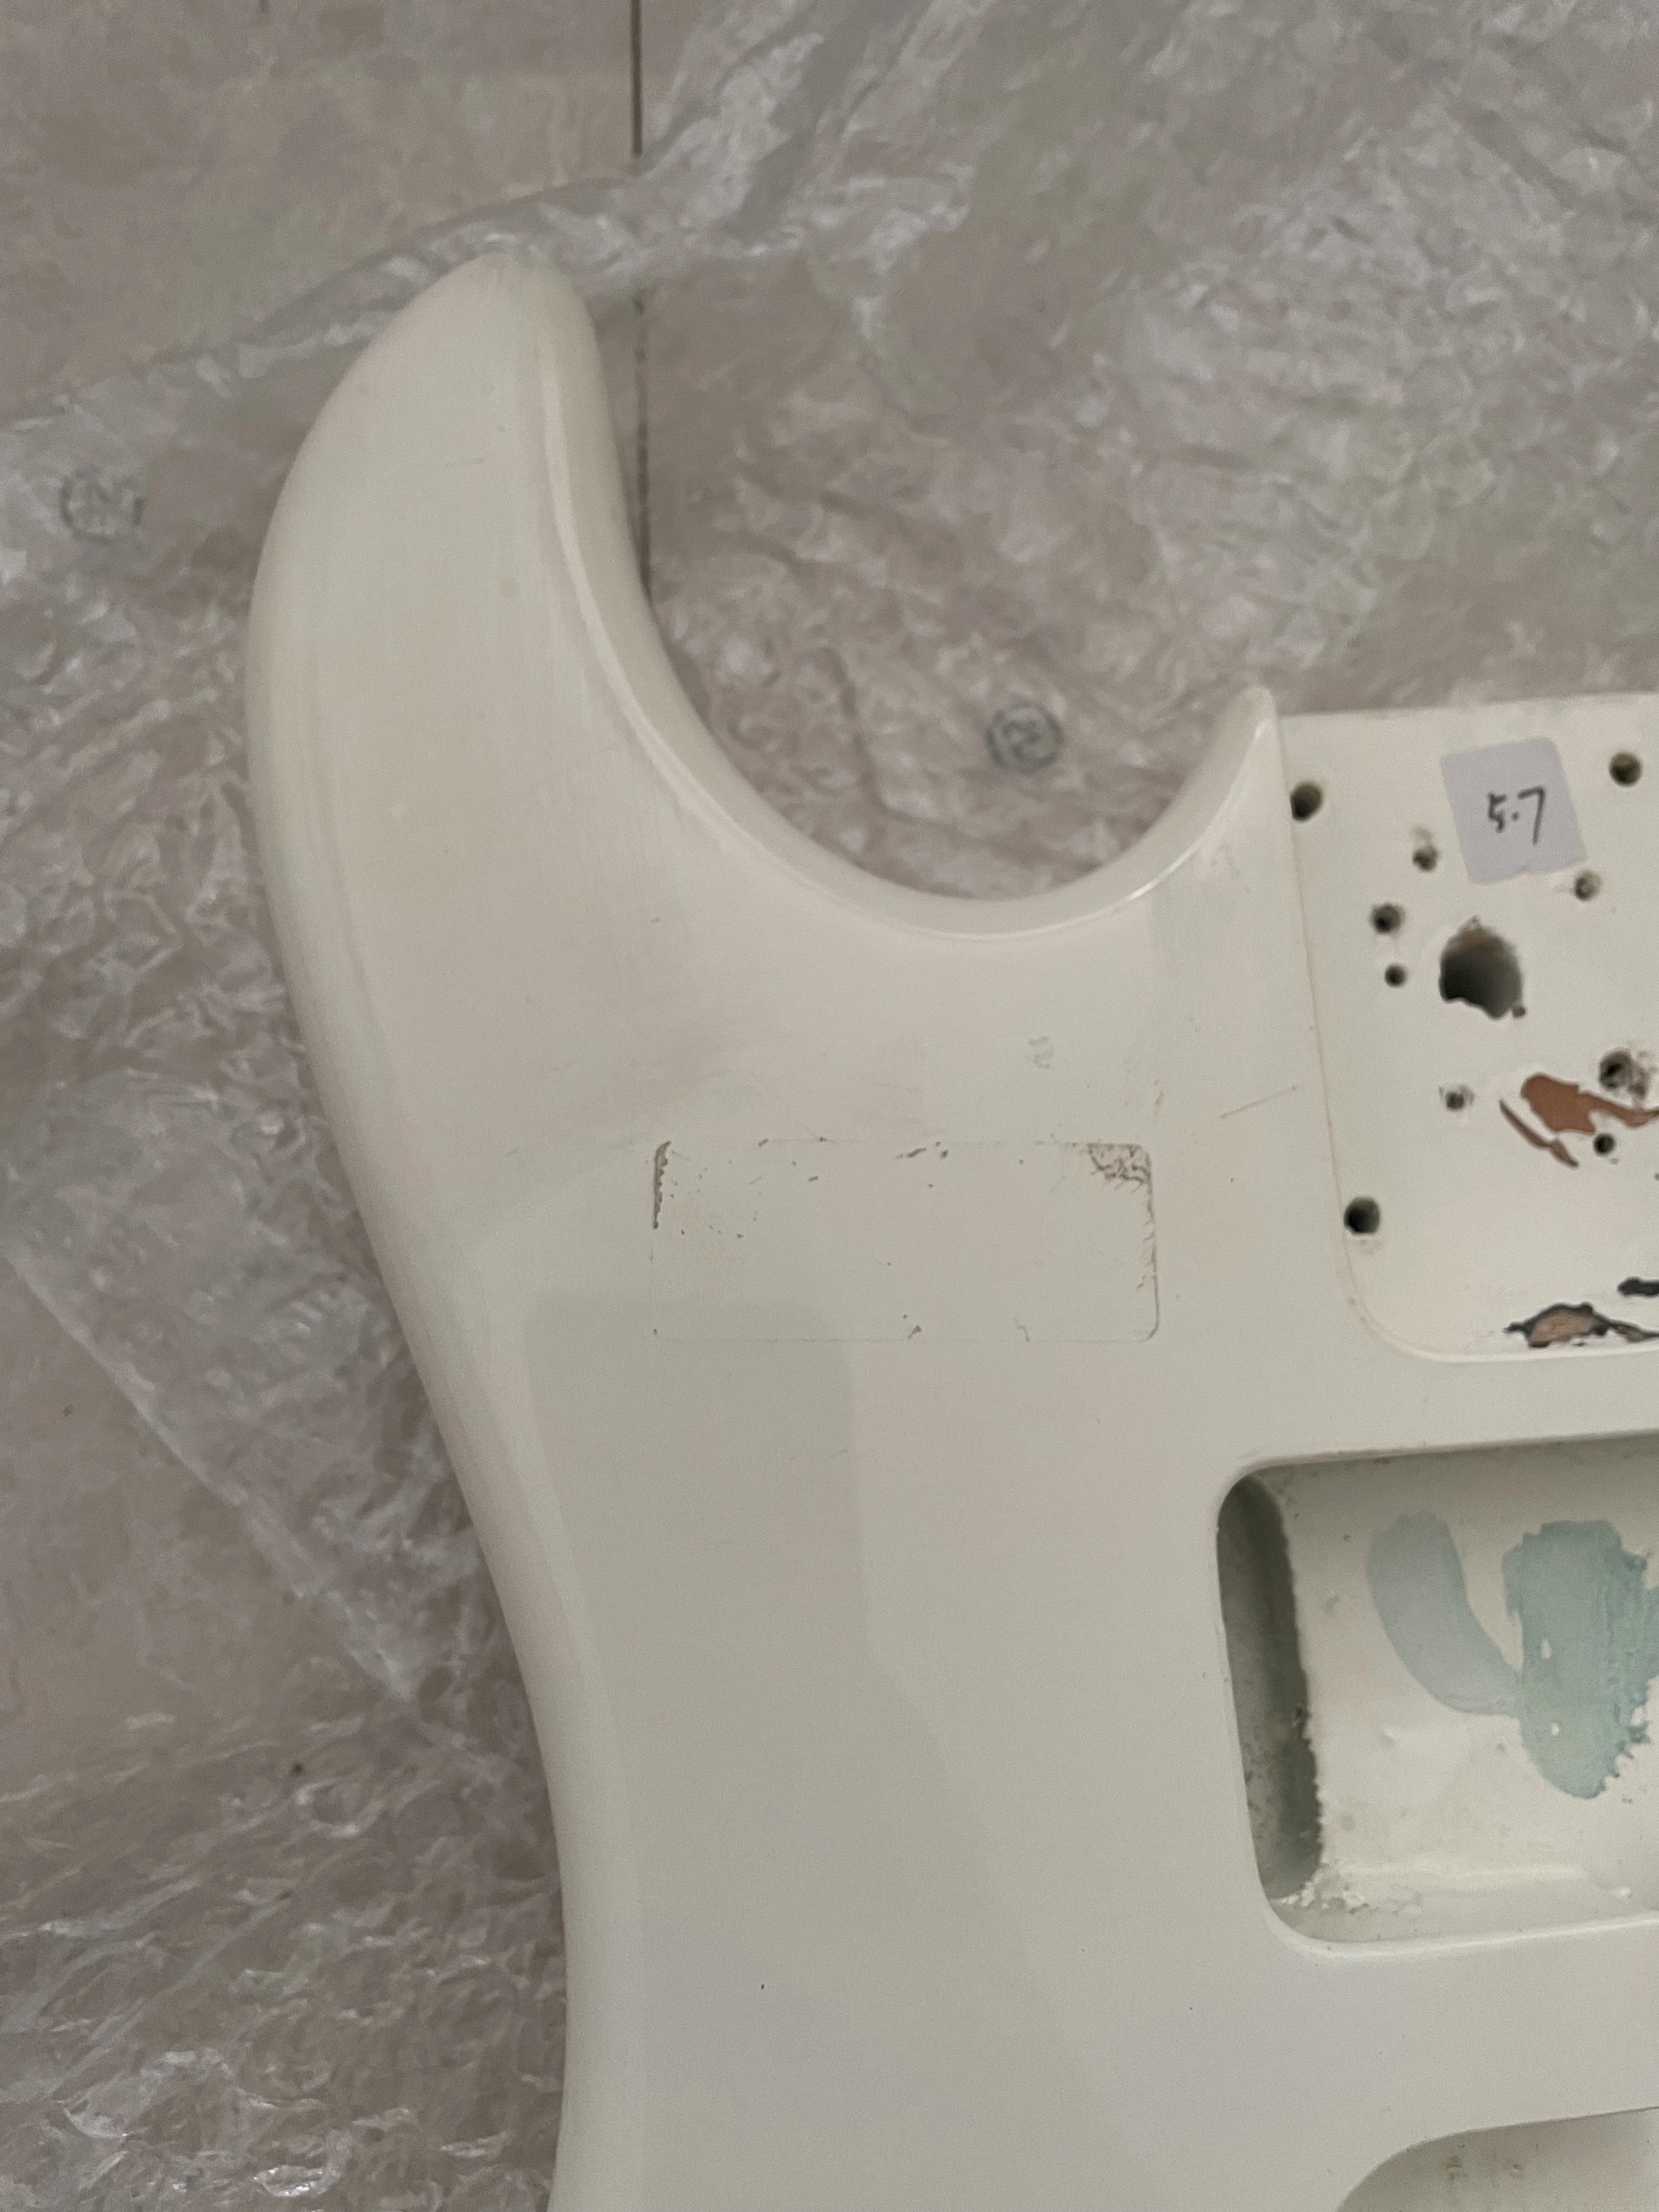 Не новый, неисправный оригинальный корпус US fender для электрогитары, готовый белый цвет, запчасти для гитары «сделай сам», толщина 4,7 см